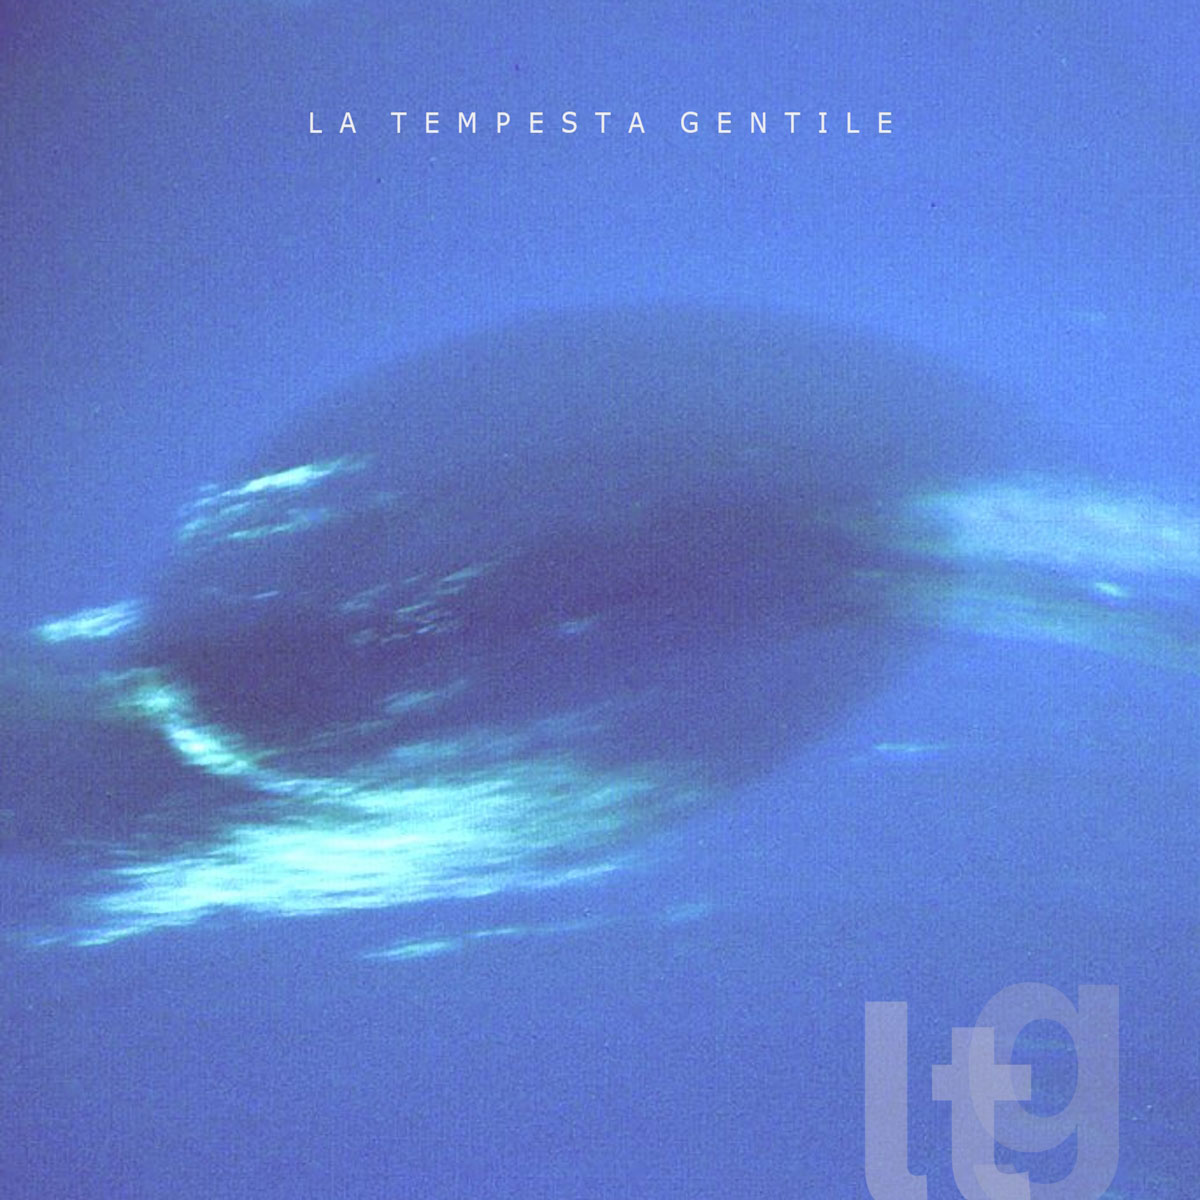 Al momento stai visualizzando “LTG” il disco d’esordio de La Tempesta Gentile